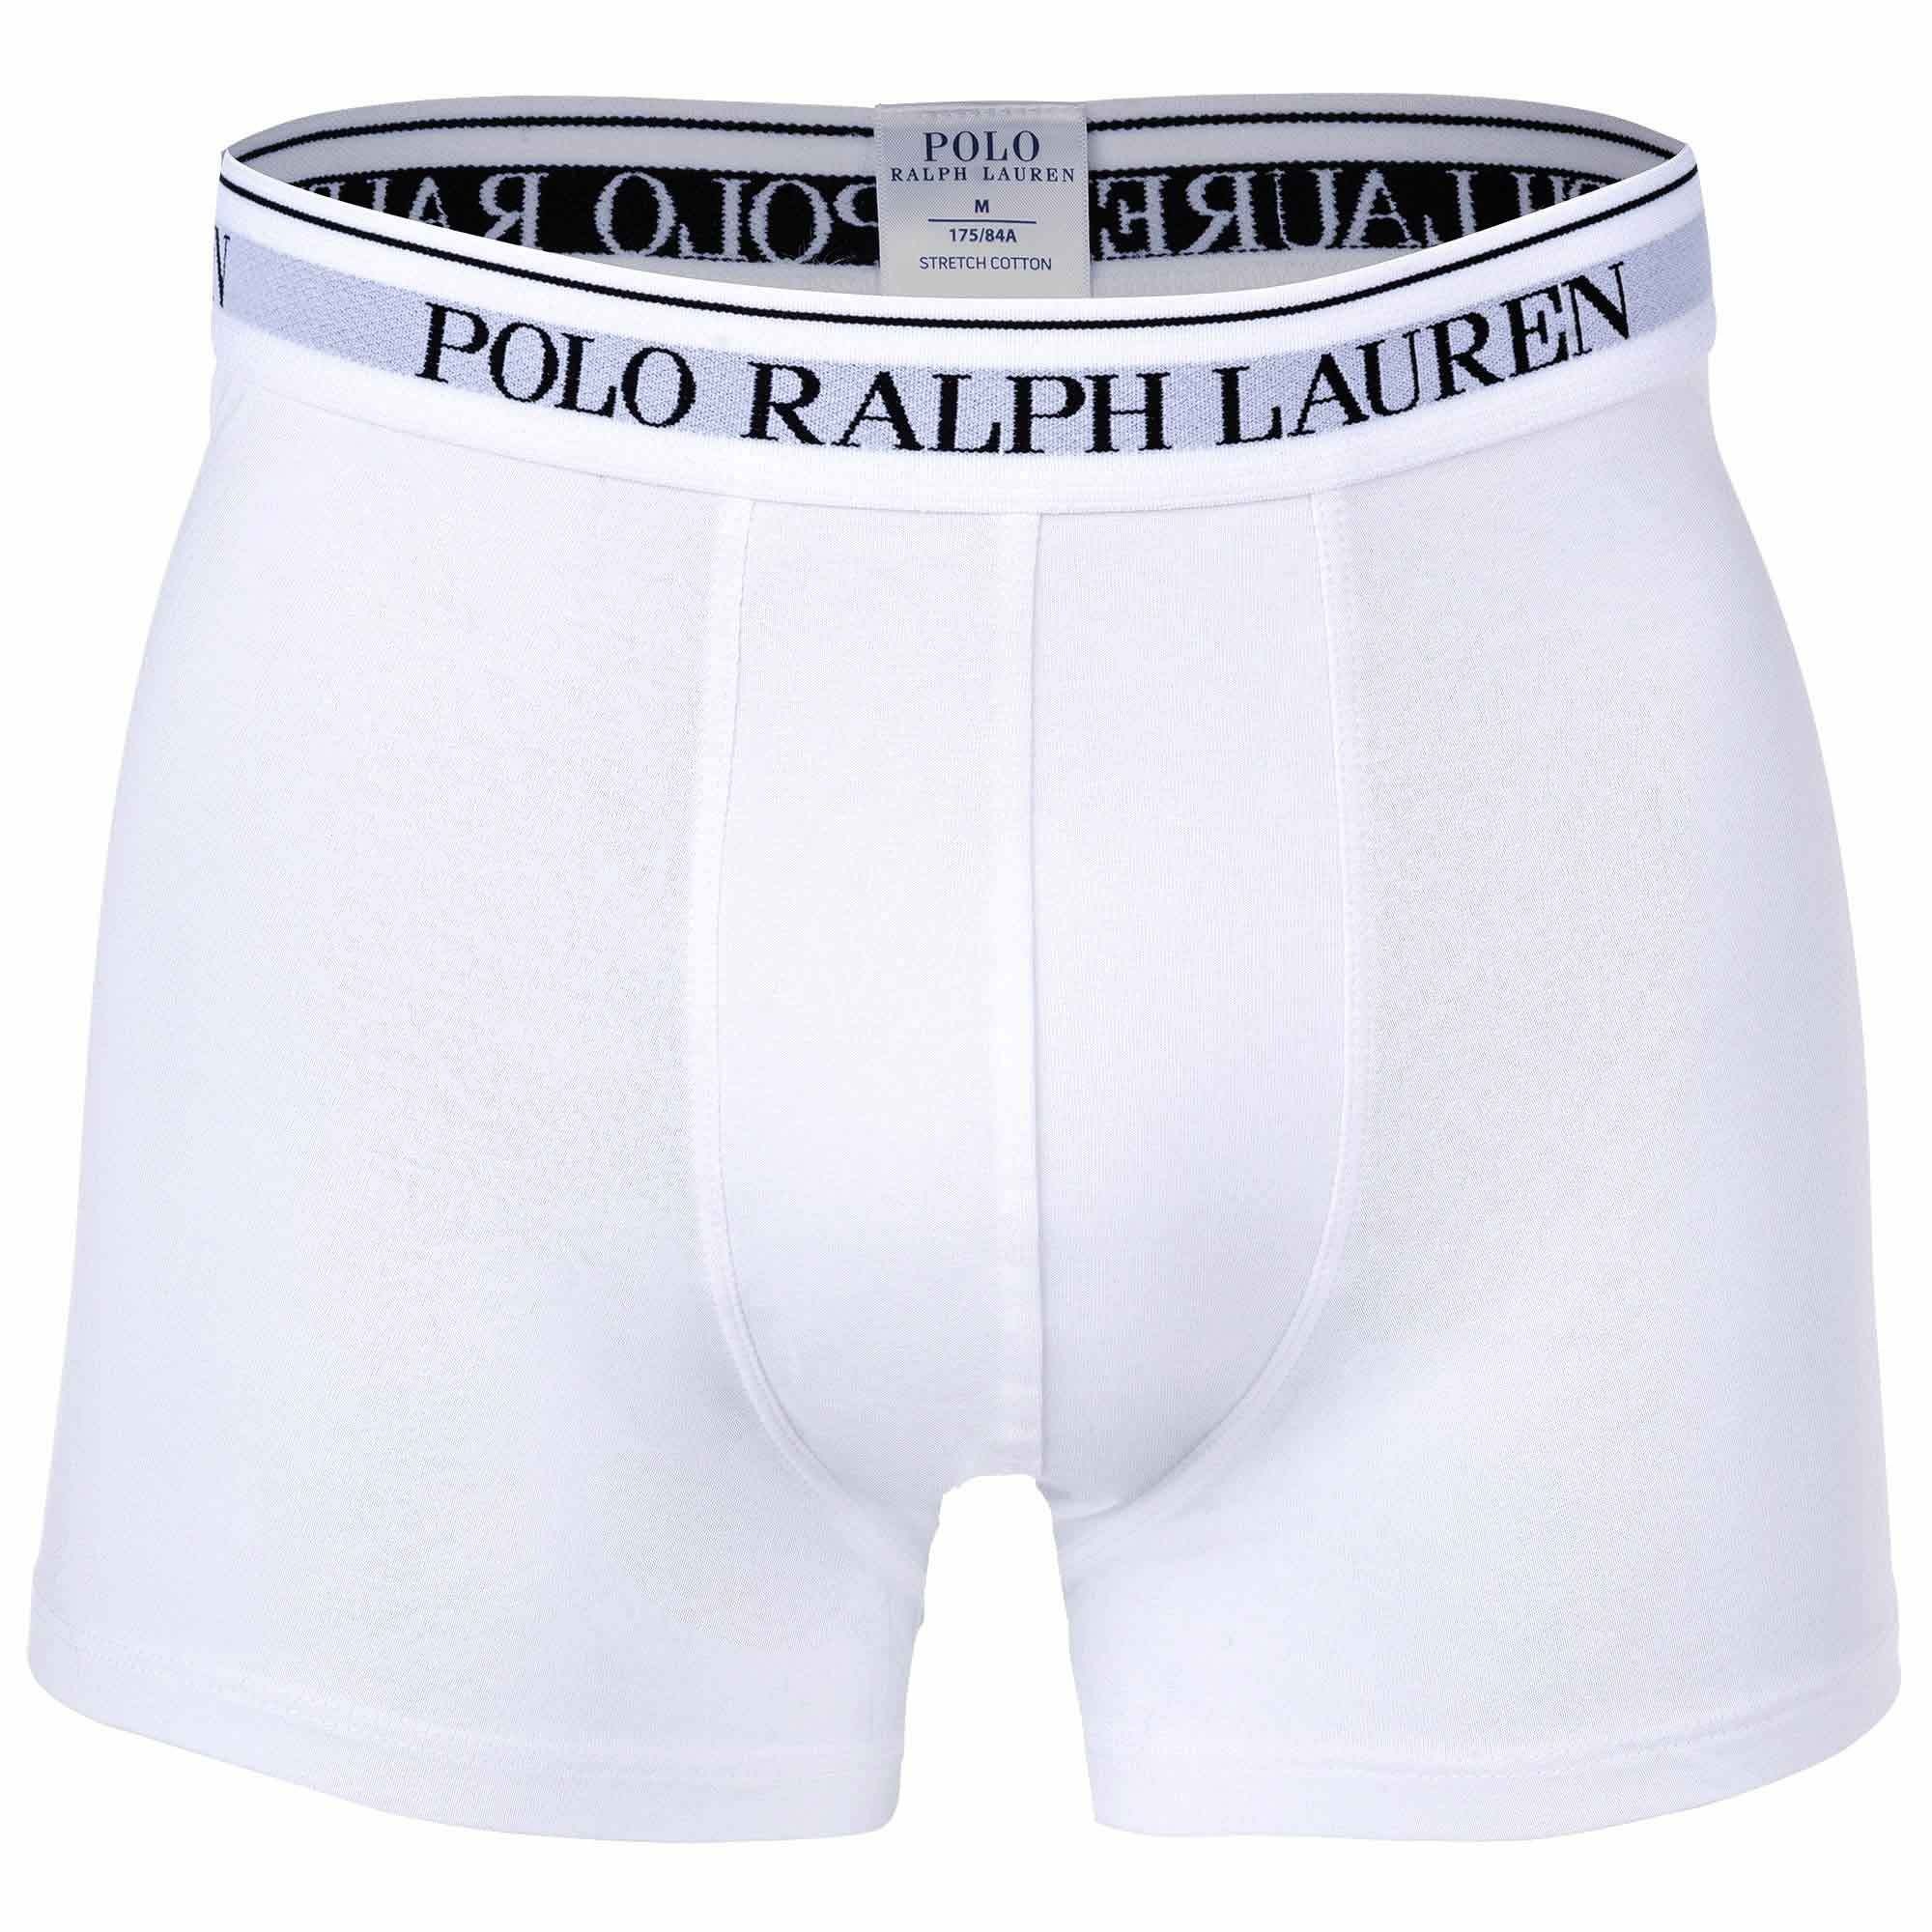 - Shorts, Boxer Pack Ralph - Herren Schwarz/Grau/Weiß 3er 3 Boxer Polo BRIEF BOXER Lauren